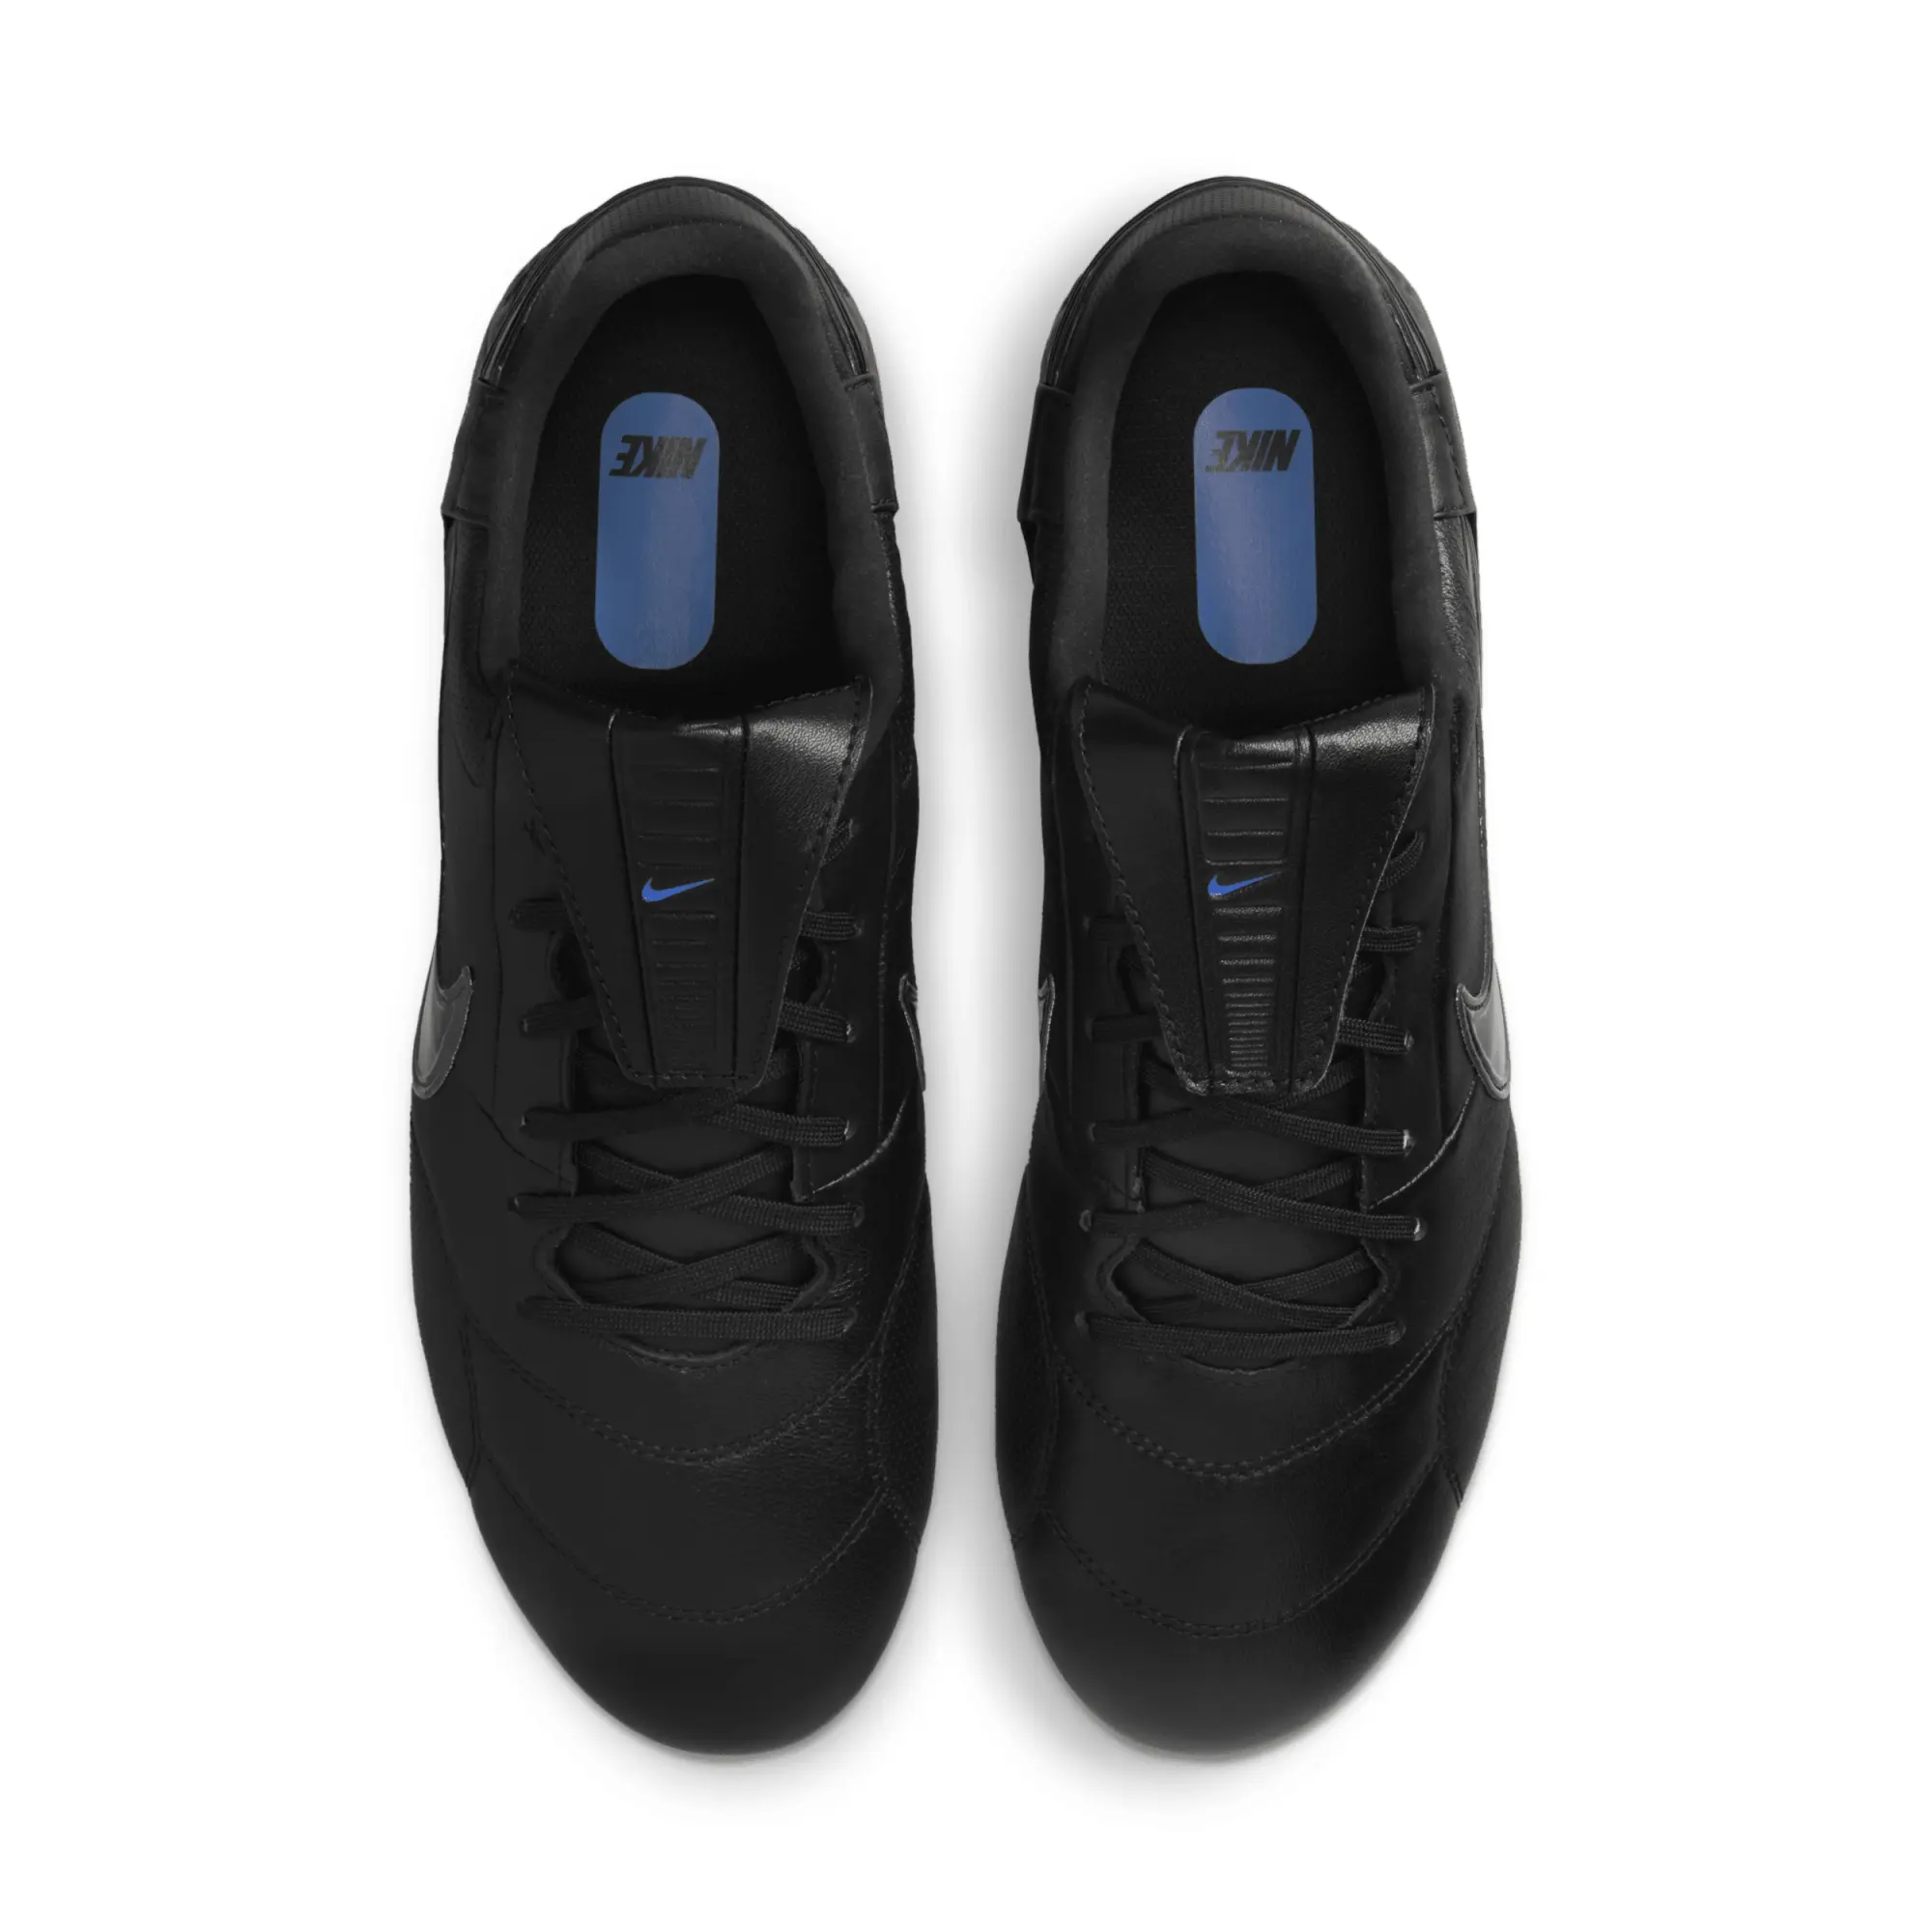 Nike Premier Lll Sg-Pro Anti-Clog Shadow - Black